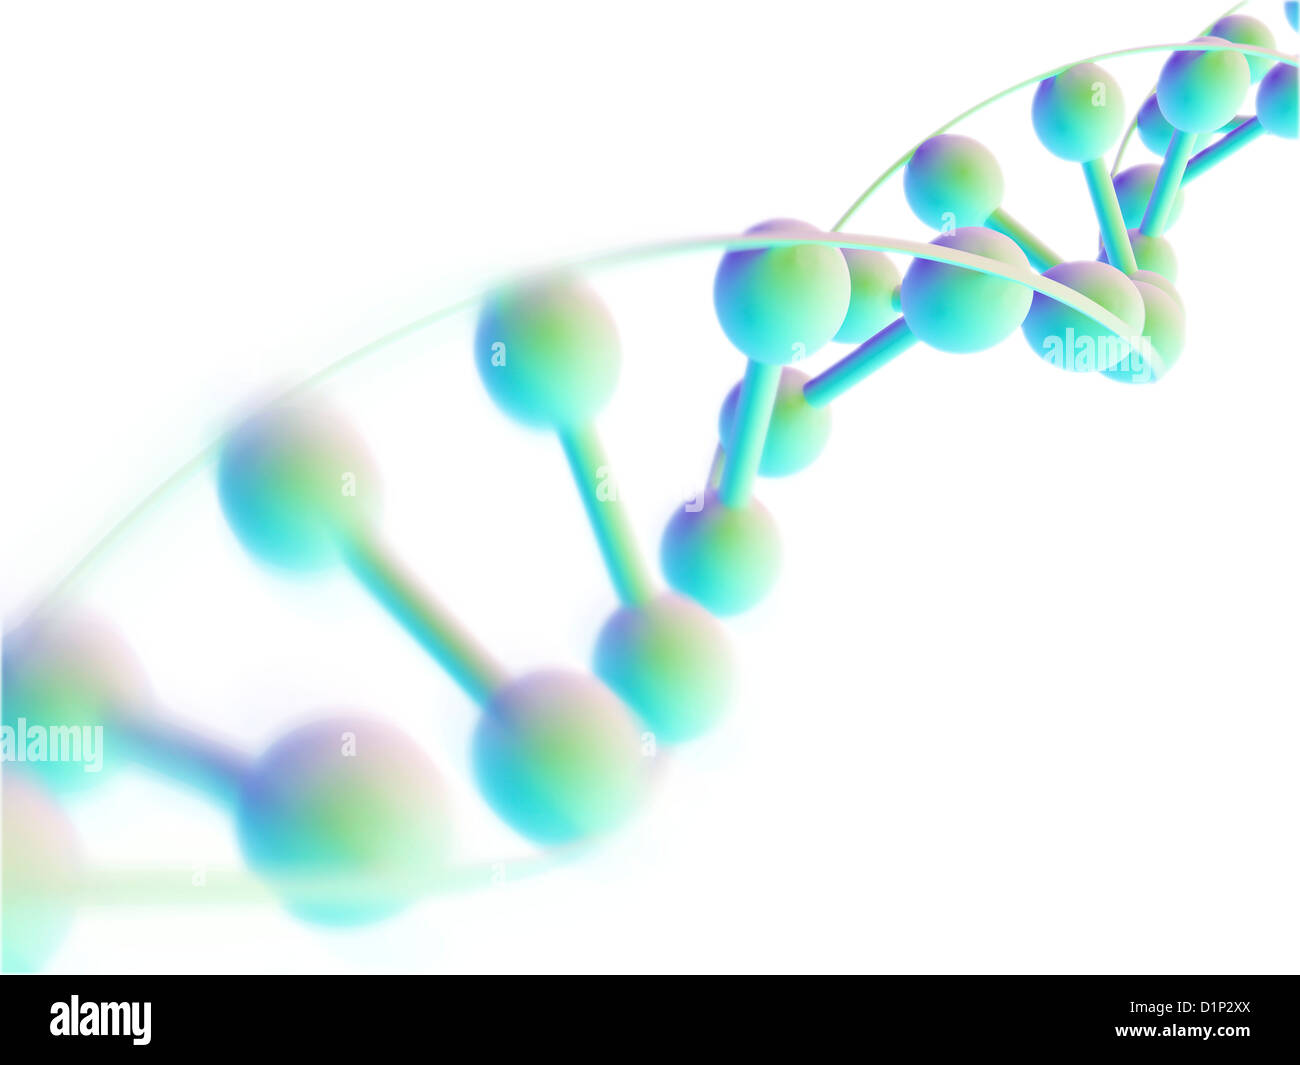 DNA molecule, computer artwork Stock Photo